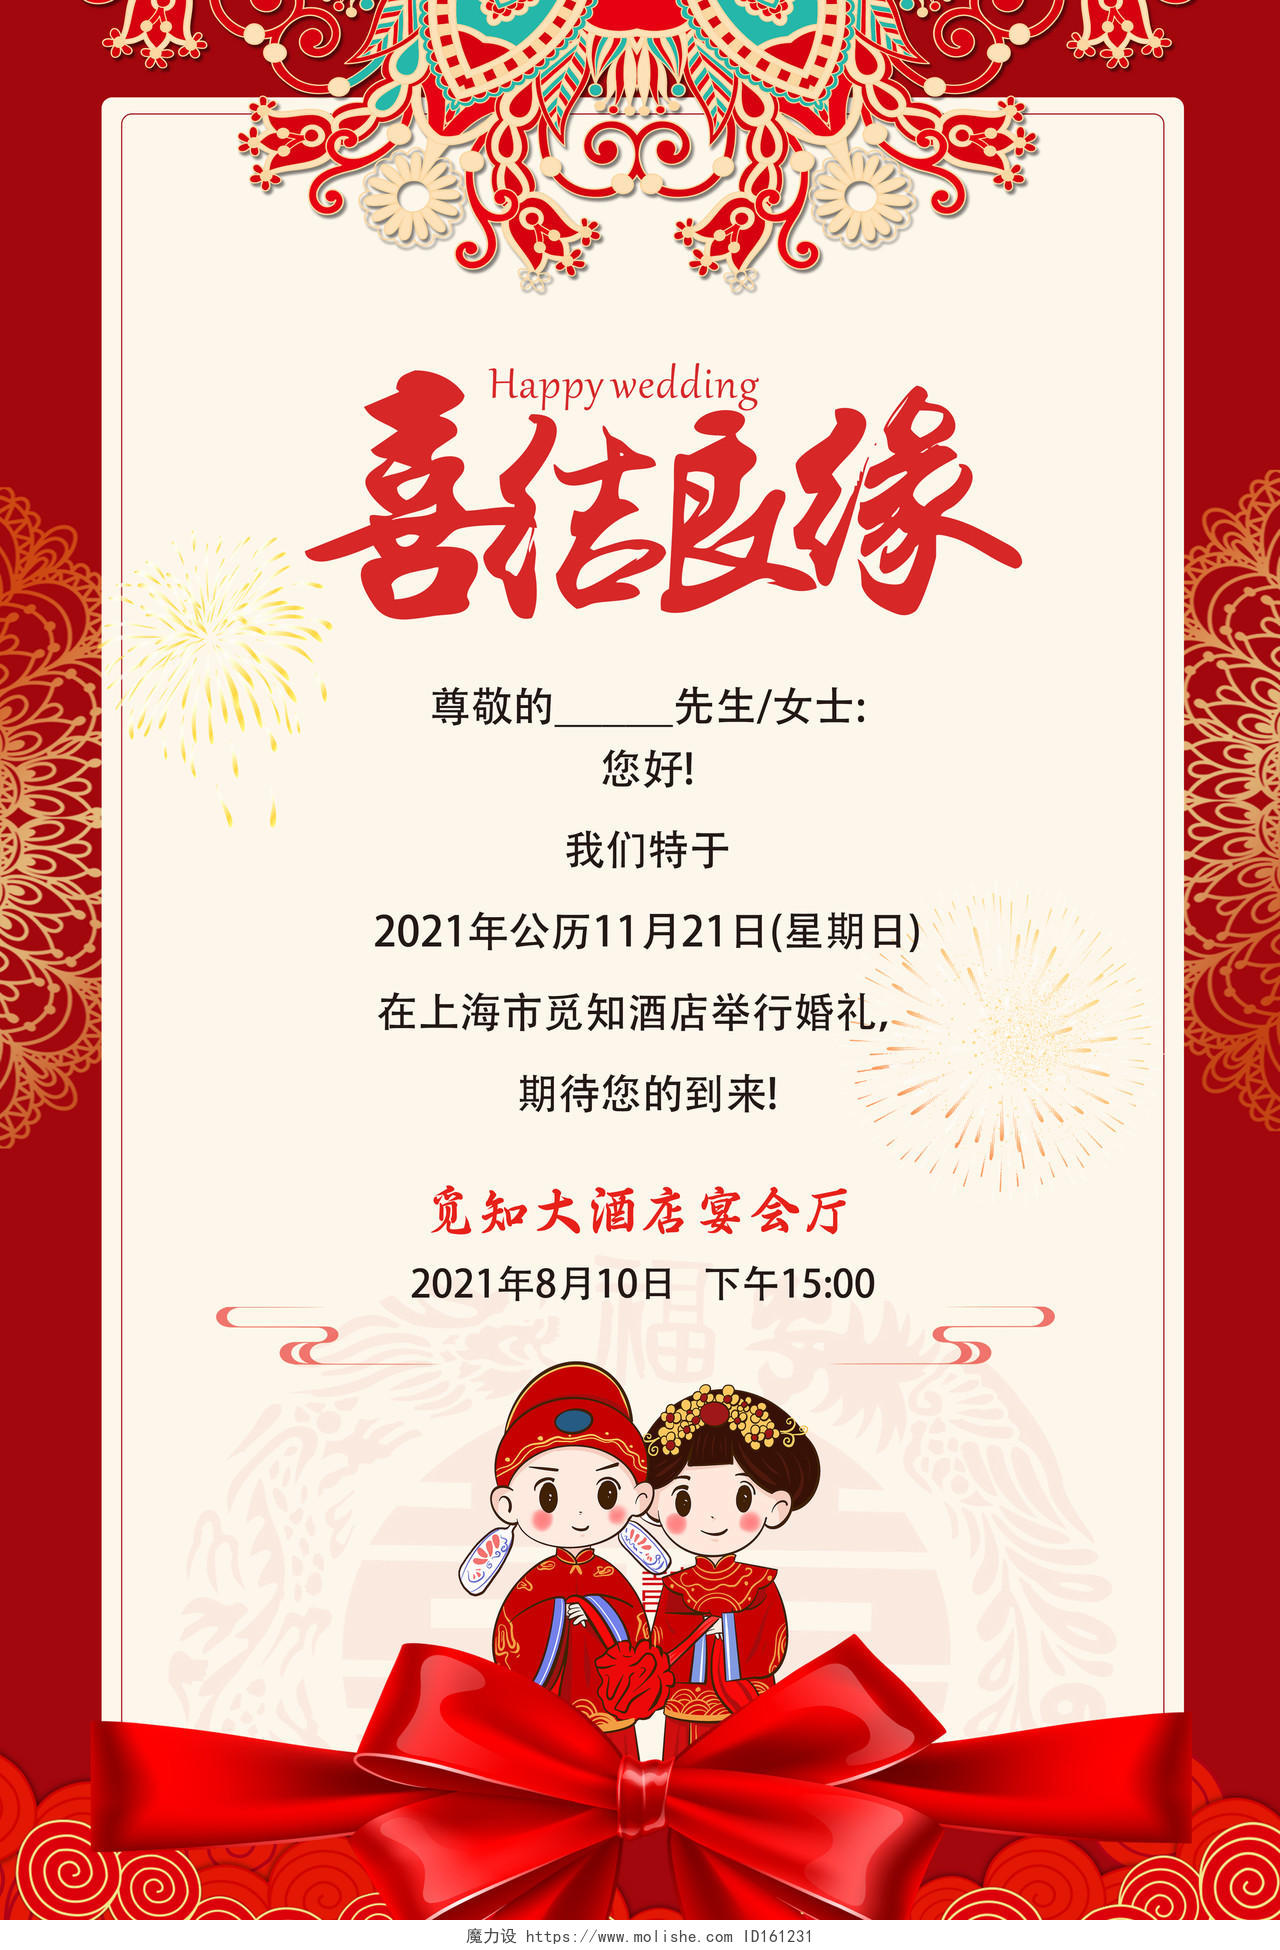 中式婚礼结婚夫妻红色婚庆婚礼结婚邀请函海报